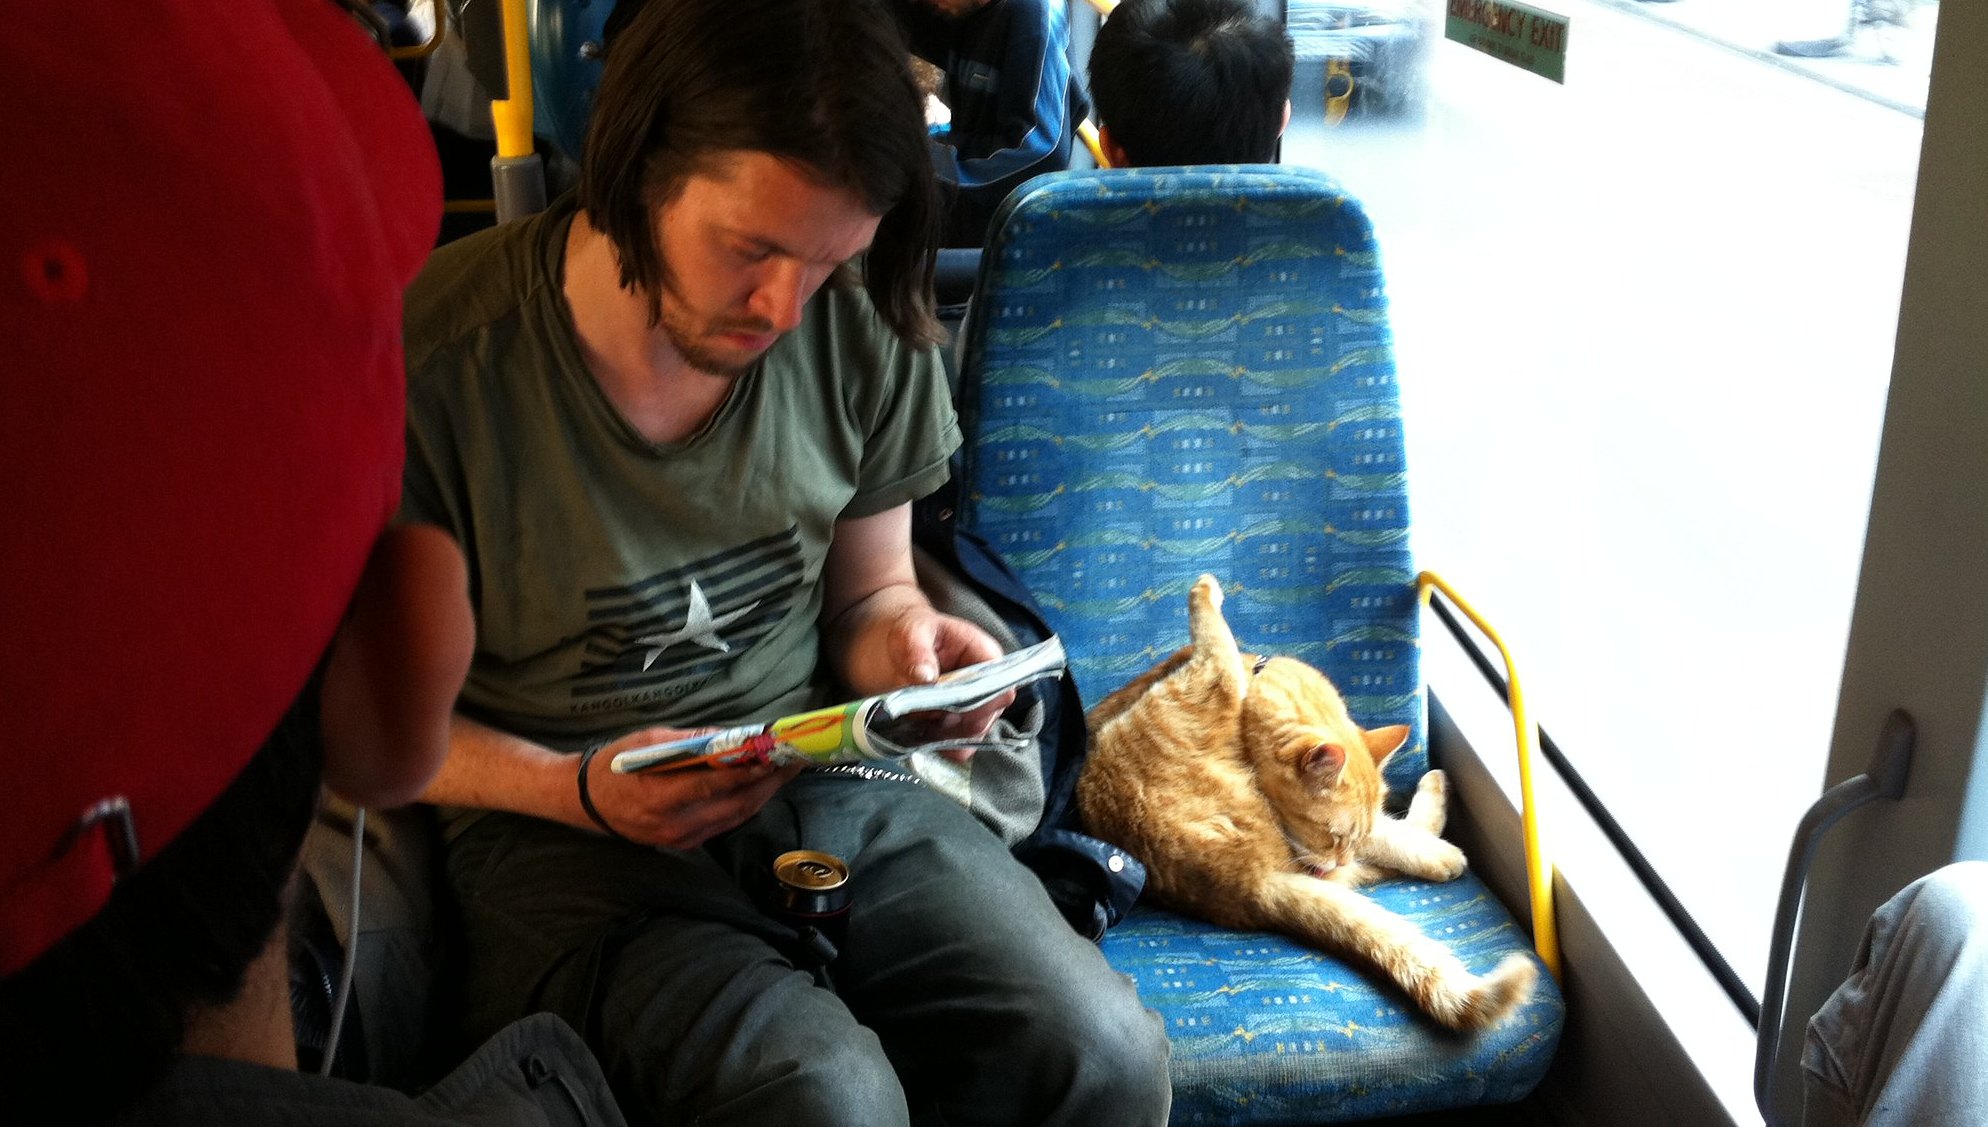 Carretilla mezcla Teórico Ahora podrás viajar con tu mascota en bus interurbano: línea lanza servicio  para que perros y gatos viajen en asientos